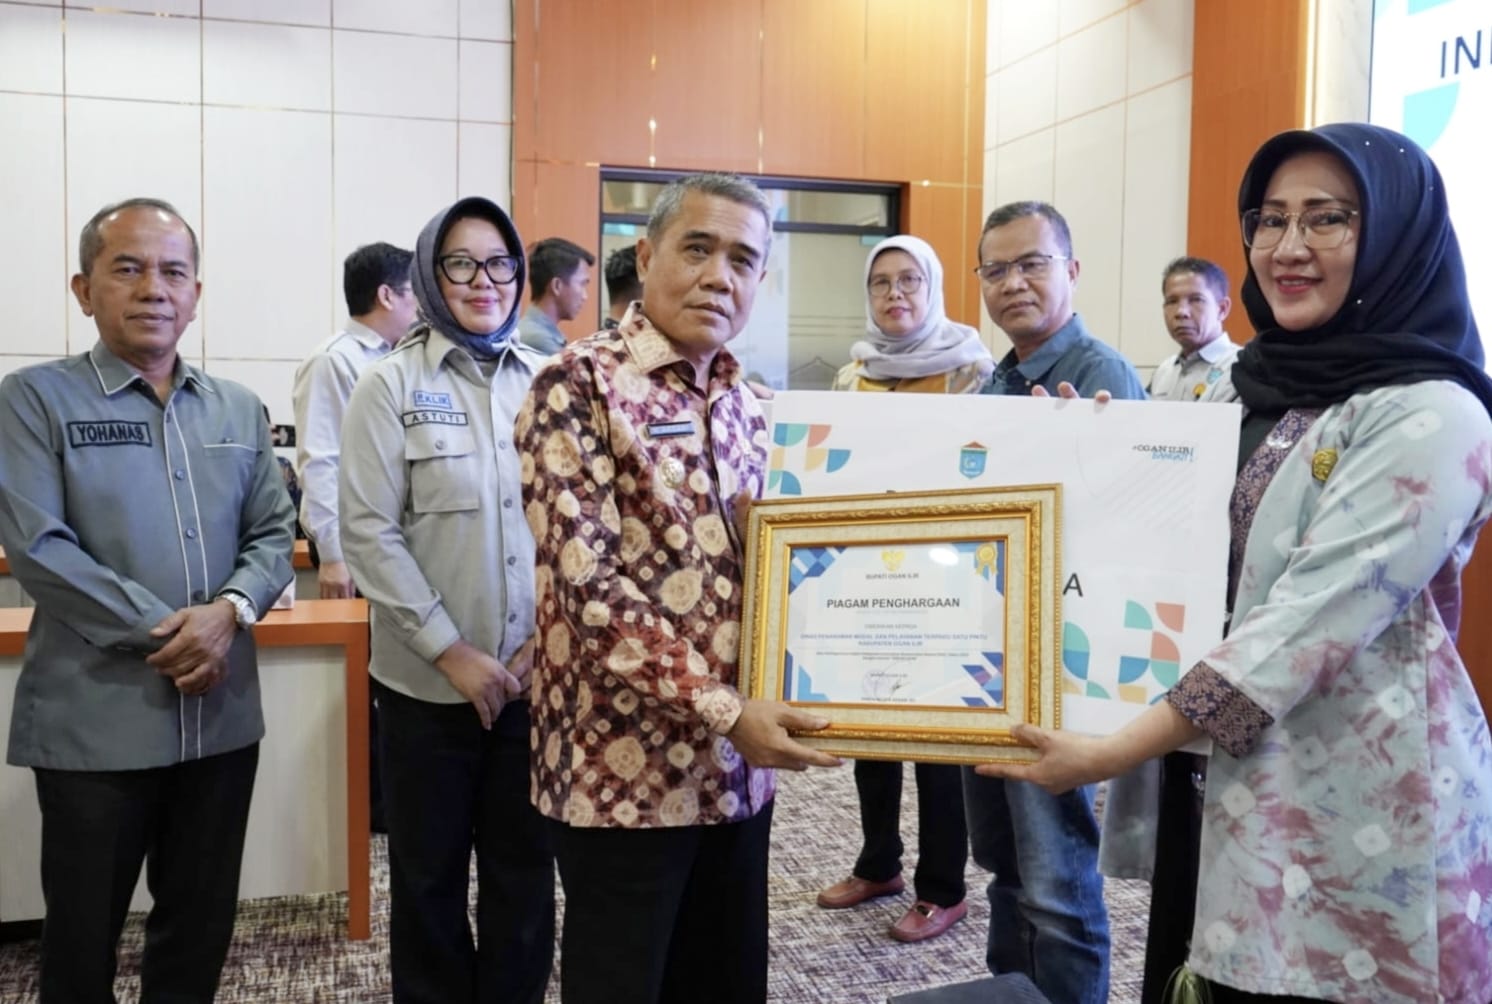 Balitbangda Ogan Ilir Berikan Penghargaan IGA ke OPD yang Paling Banyak Inovasi, Wabup Sampaikan Apresiasi